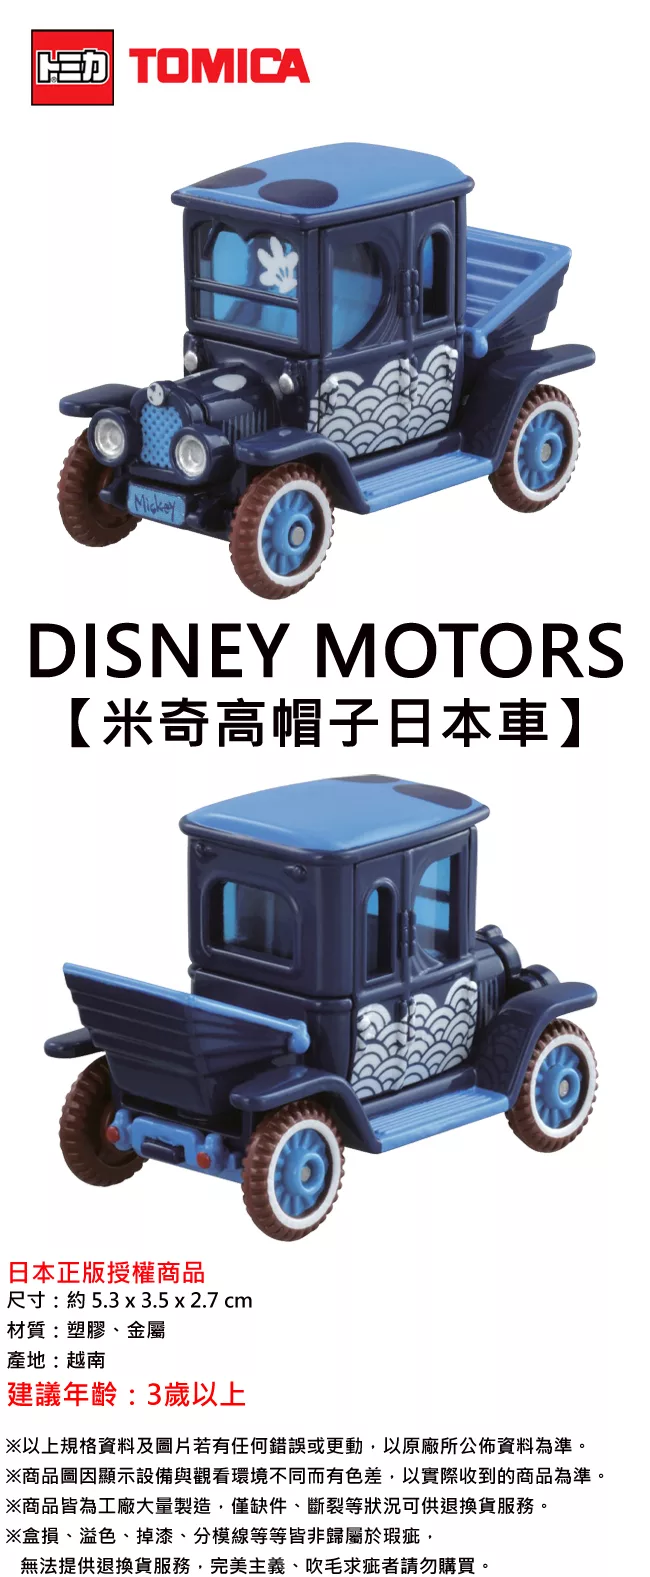 博客來 日本正版授權 Tomica 米奇高帽子日本車玩具車日本7 11限定款disney Motors 多美小汽車